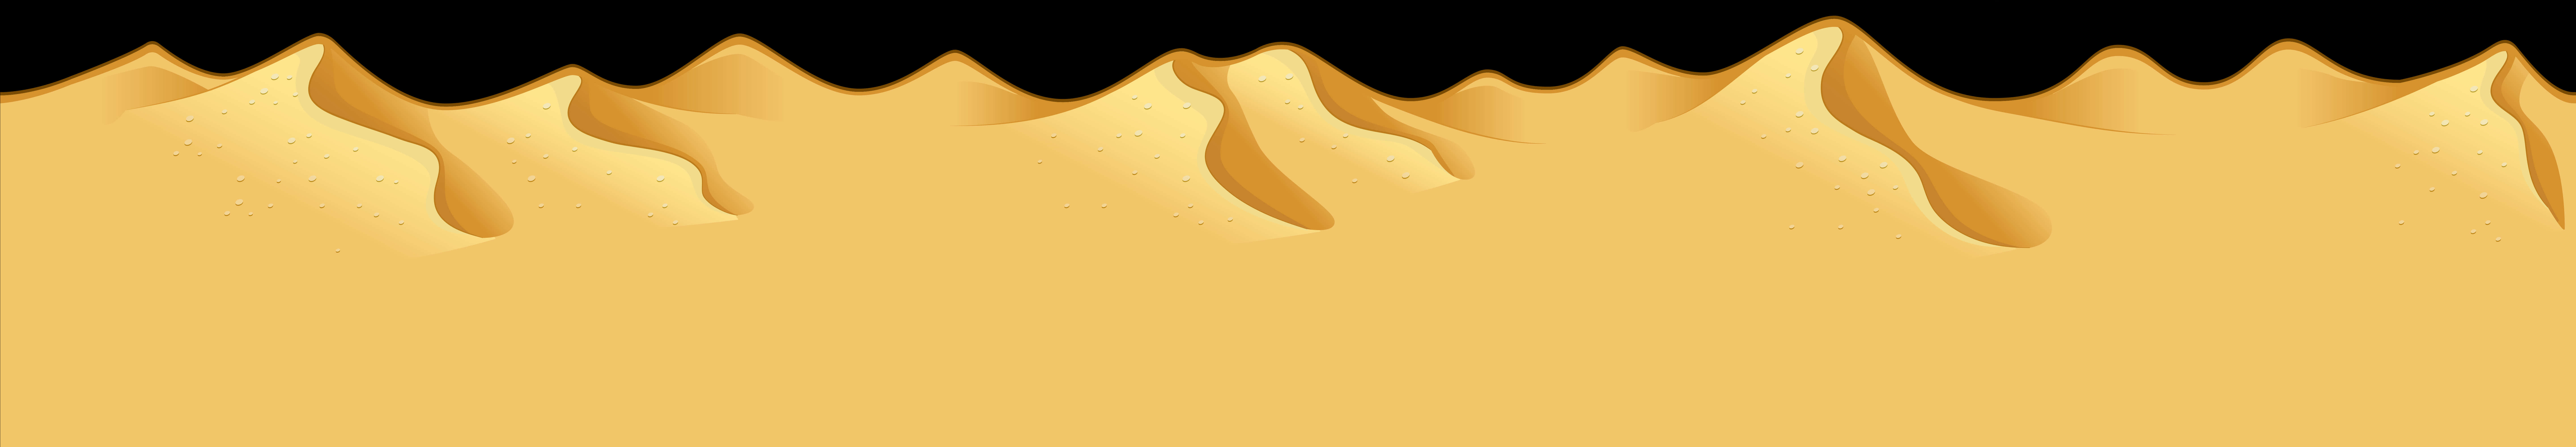 Desert Dunes Silhouette